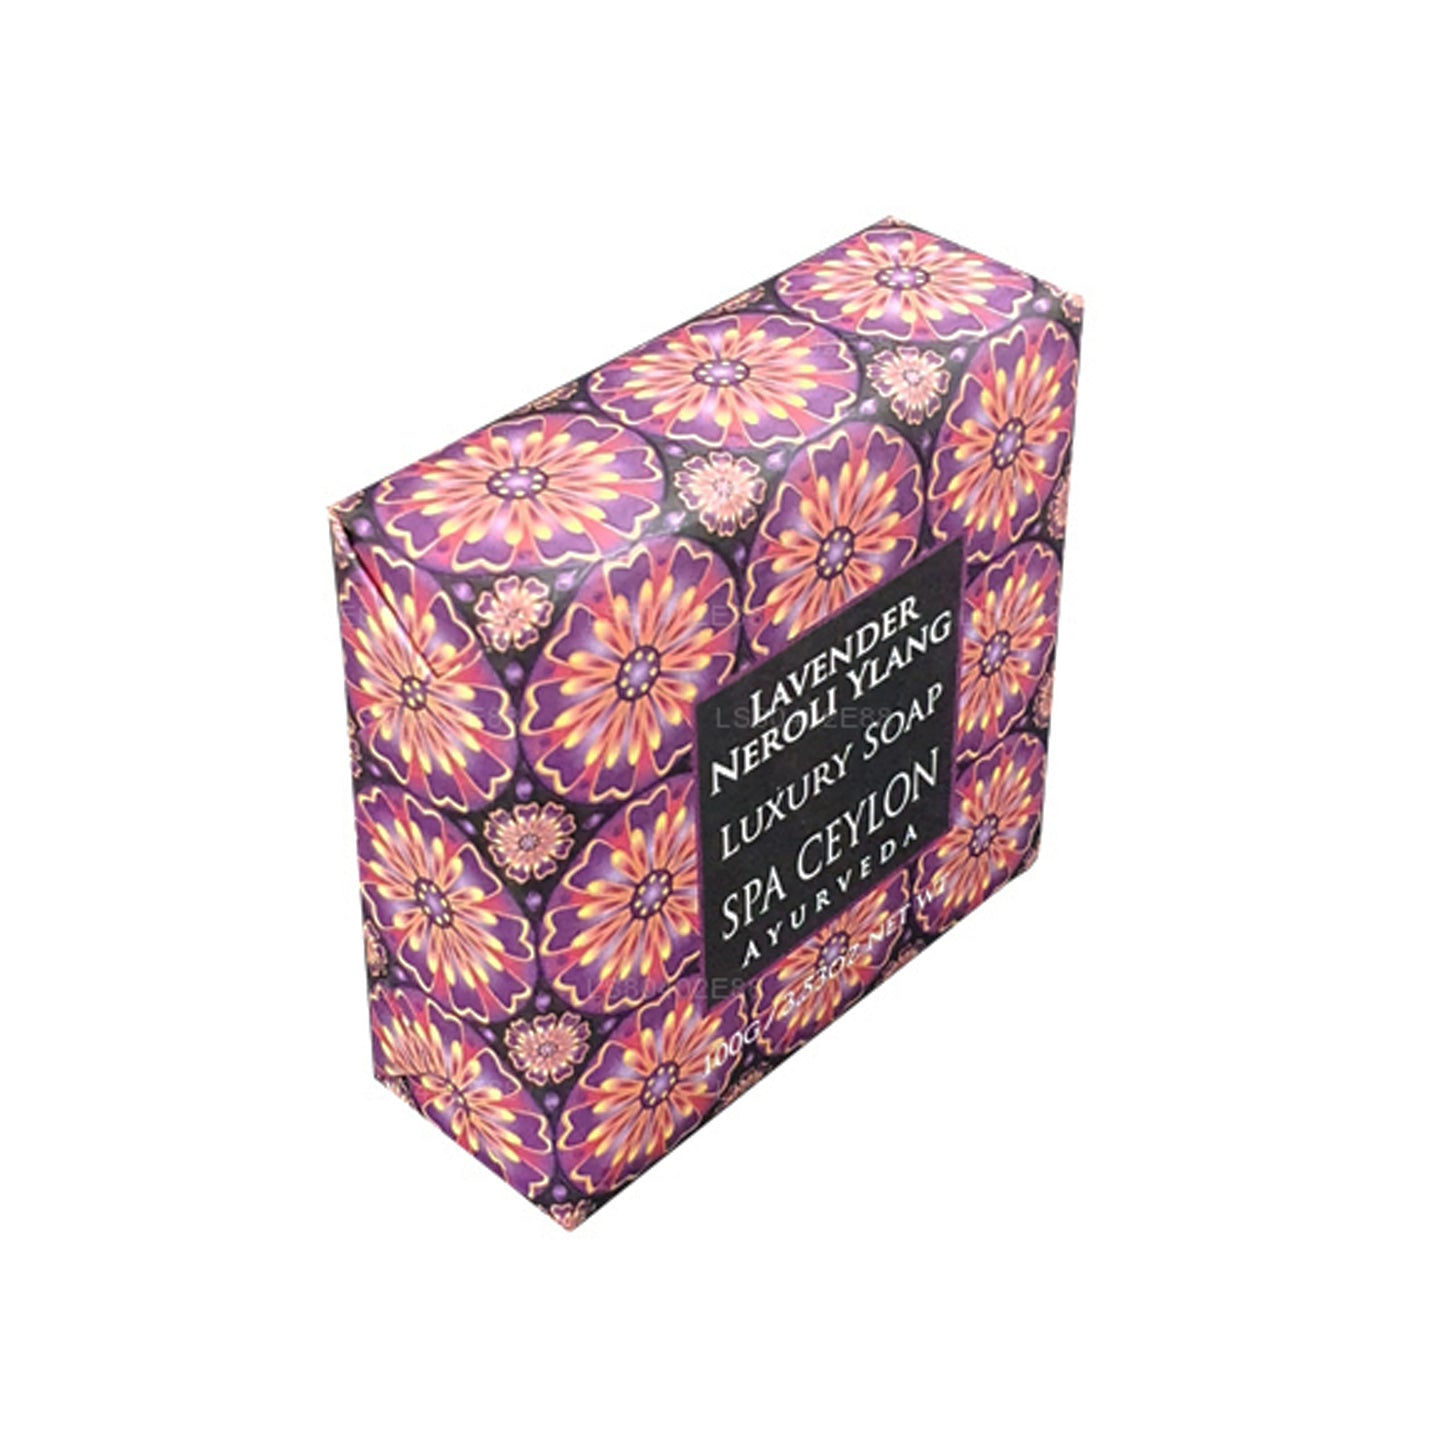 Spa Ceylon Lavender Neroli Ylang Luxury Soap (100g)